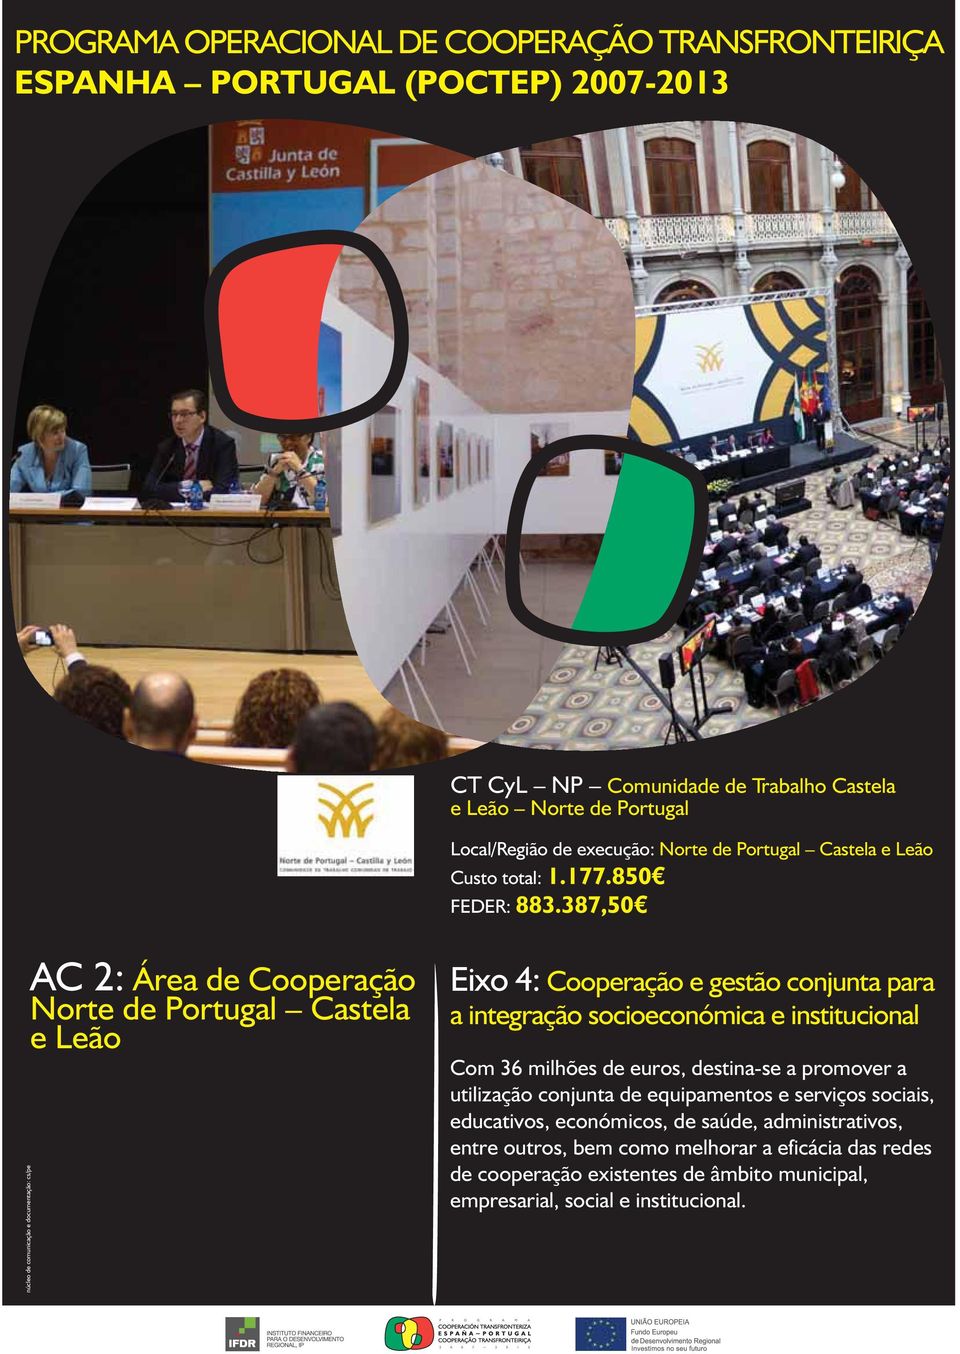 387,50 núcleo de comunicação e documentação: cs/pe AC 2: Área de Cooperação Norte de Portugal Castela e Leão Eixo 4: Cooperação e gestão conjunta para a integração socioeconómica e